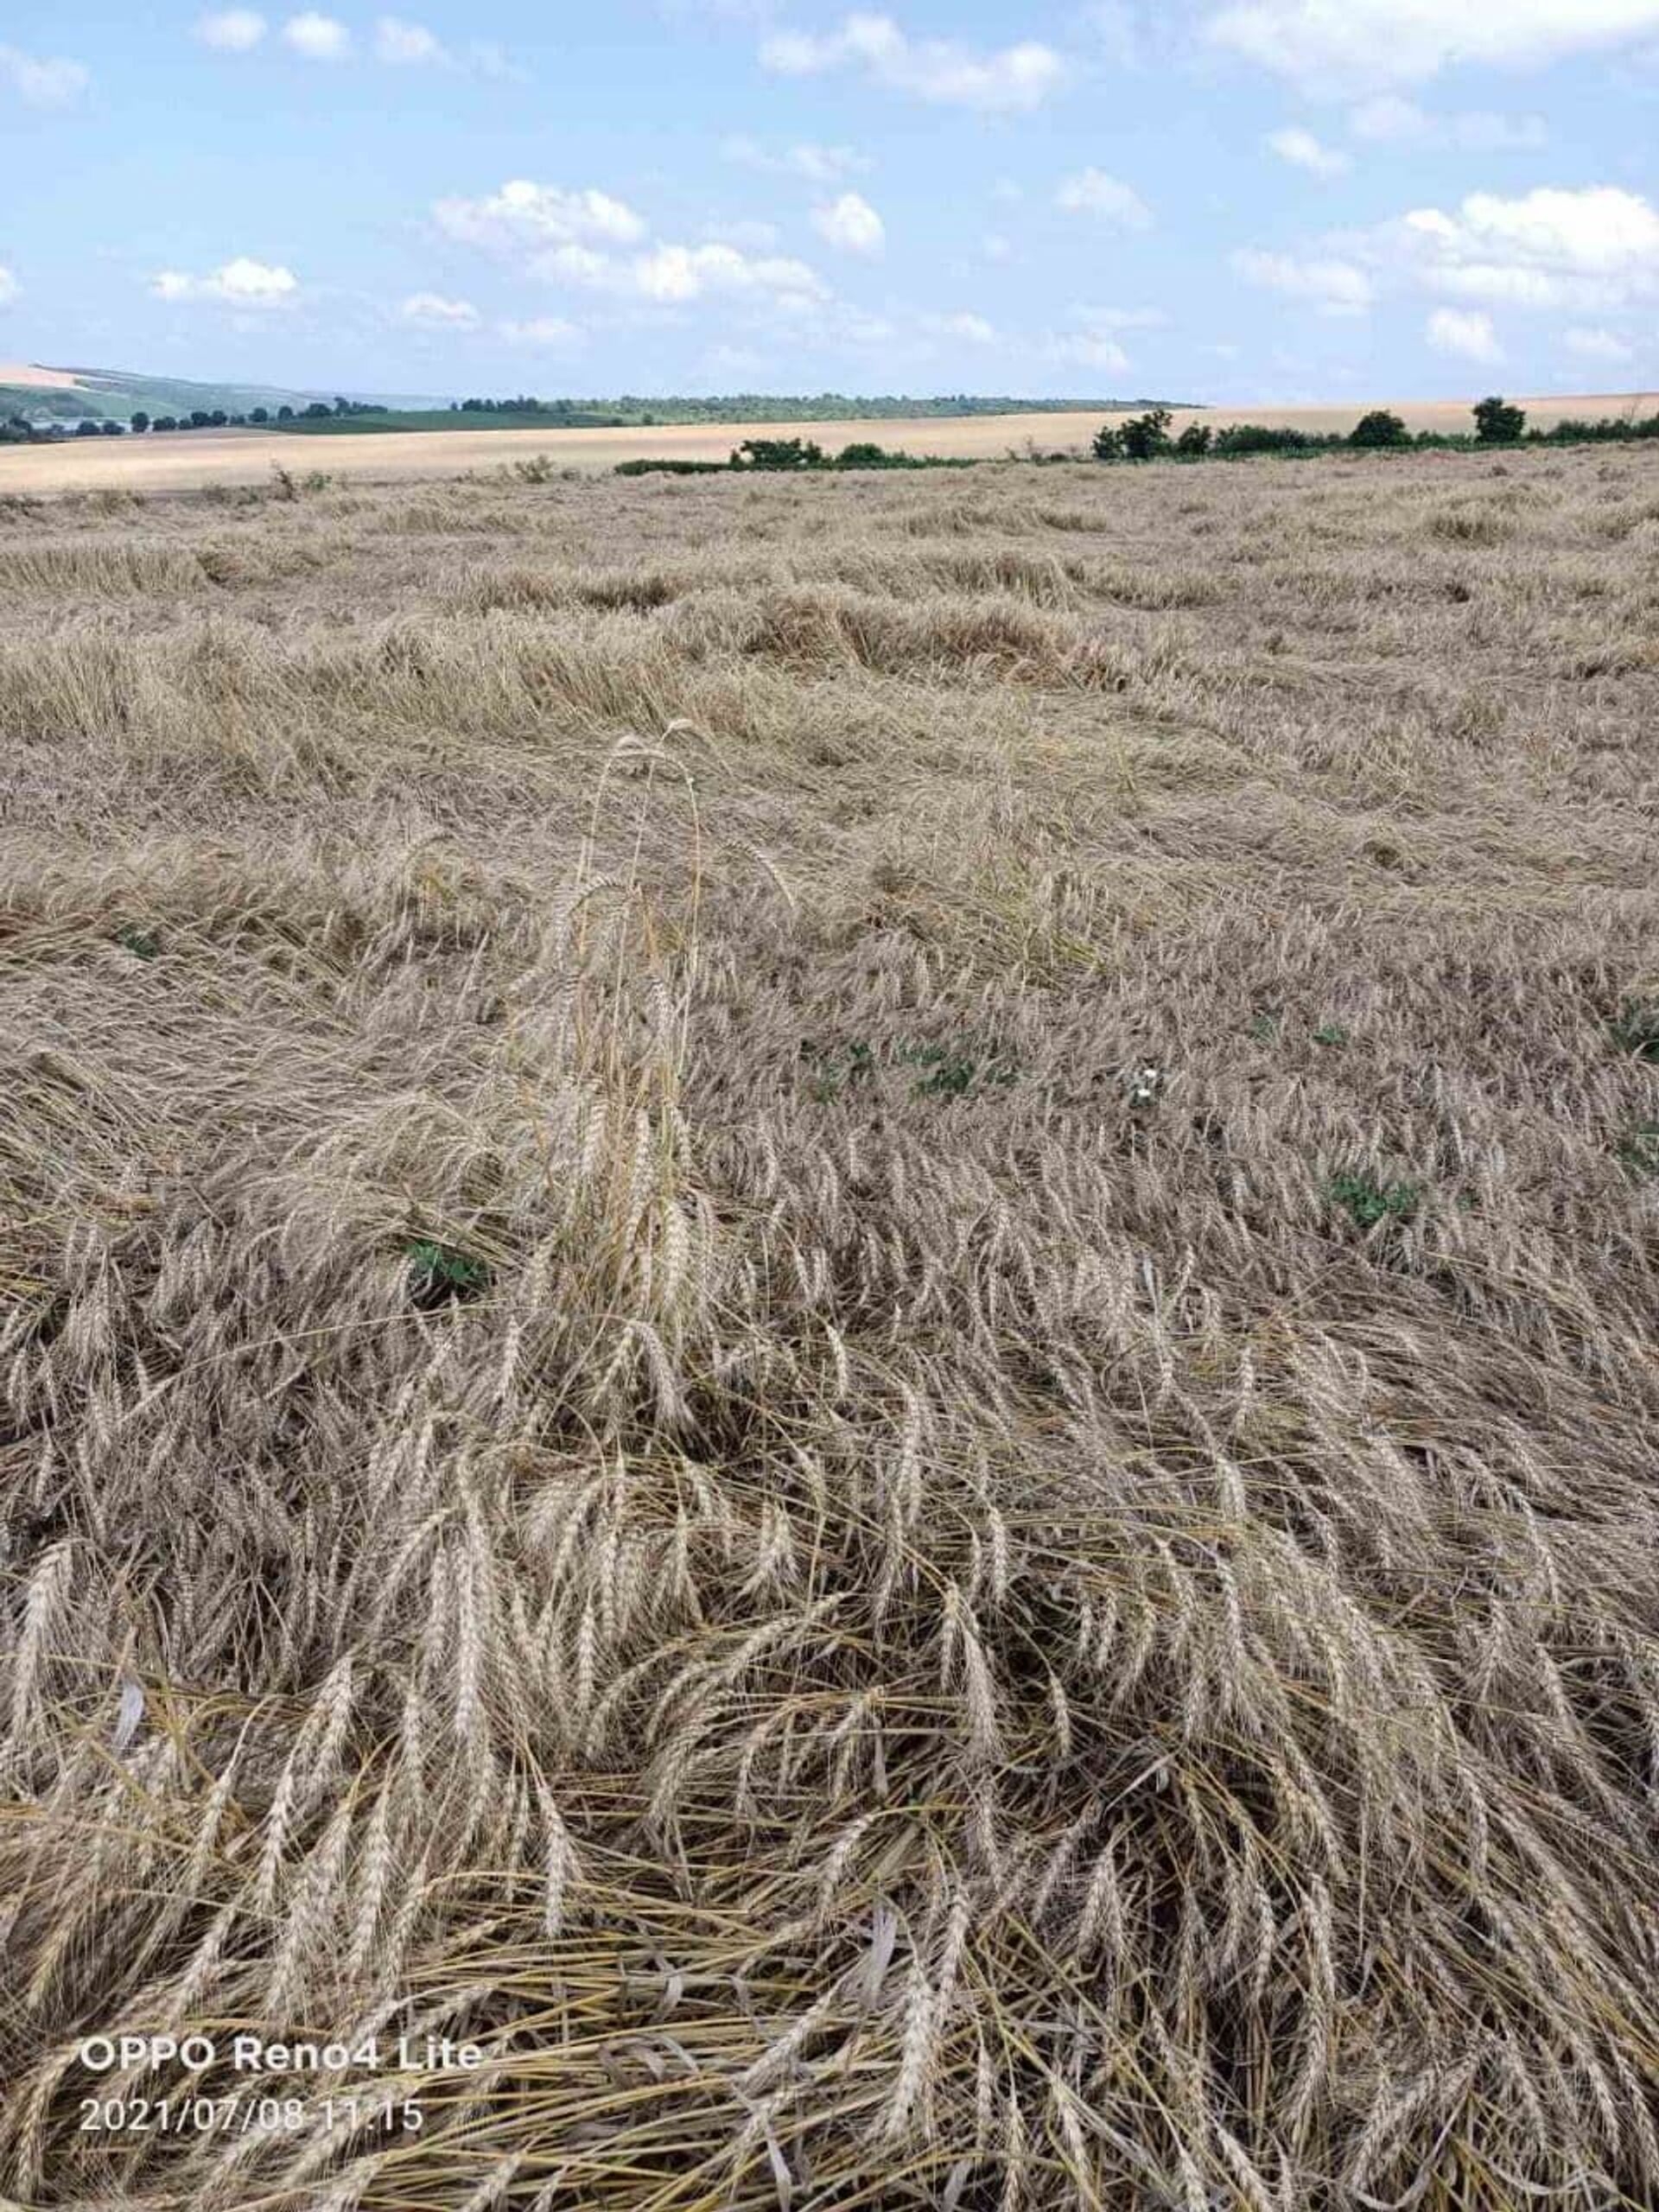  Ploile torențiale și vânturile puternice au pătulit lanurile de cereale din sud-estul Republicii Moldova - Sputnik Moldova, 1920, 20.07.2021